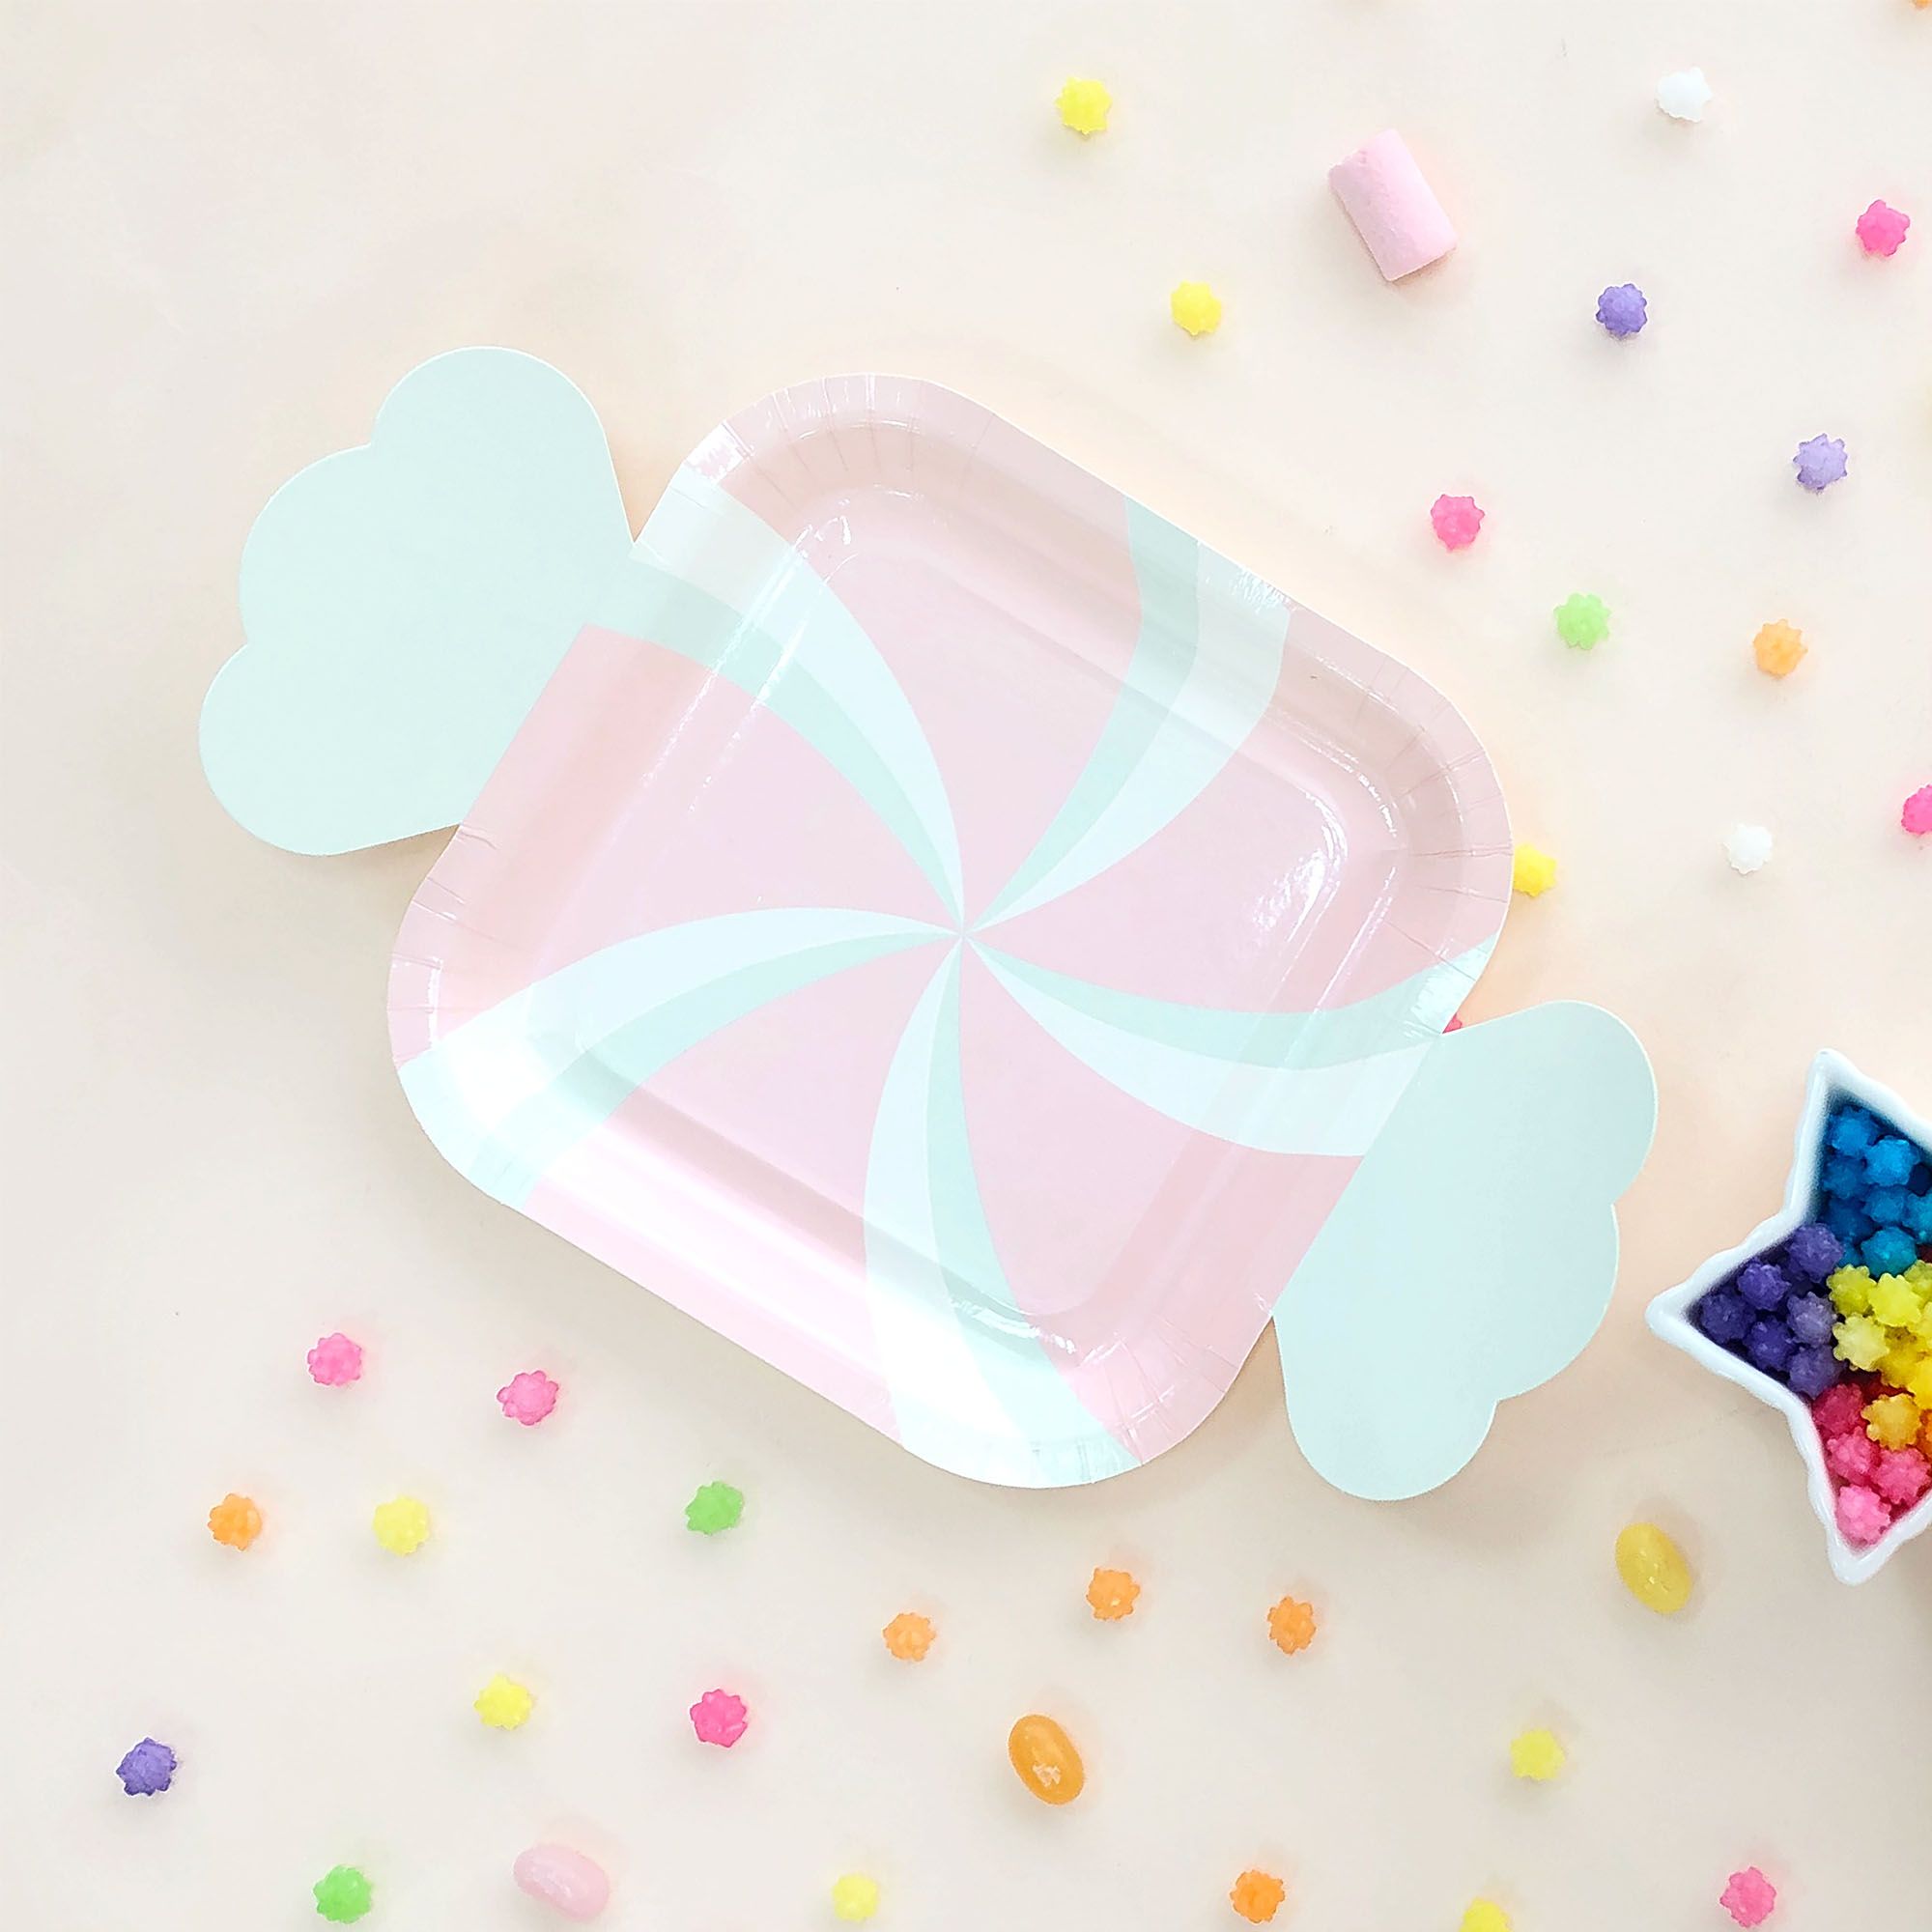 만화 모양 사탕 접시와 포크 세트, 아이들의 생일 파티에 사용하여 더 많은 유쾌한 분위기를 더하세요